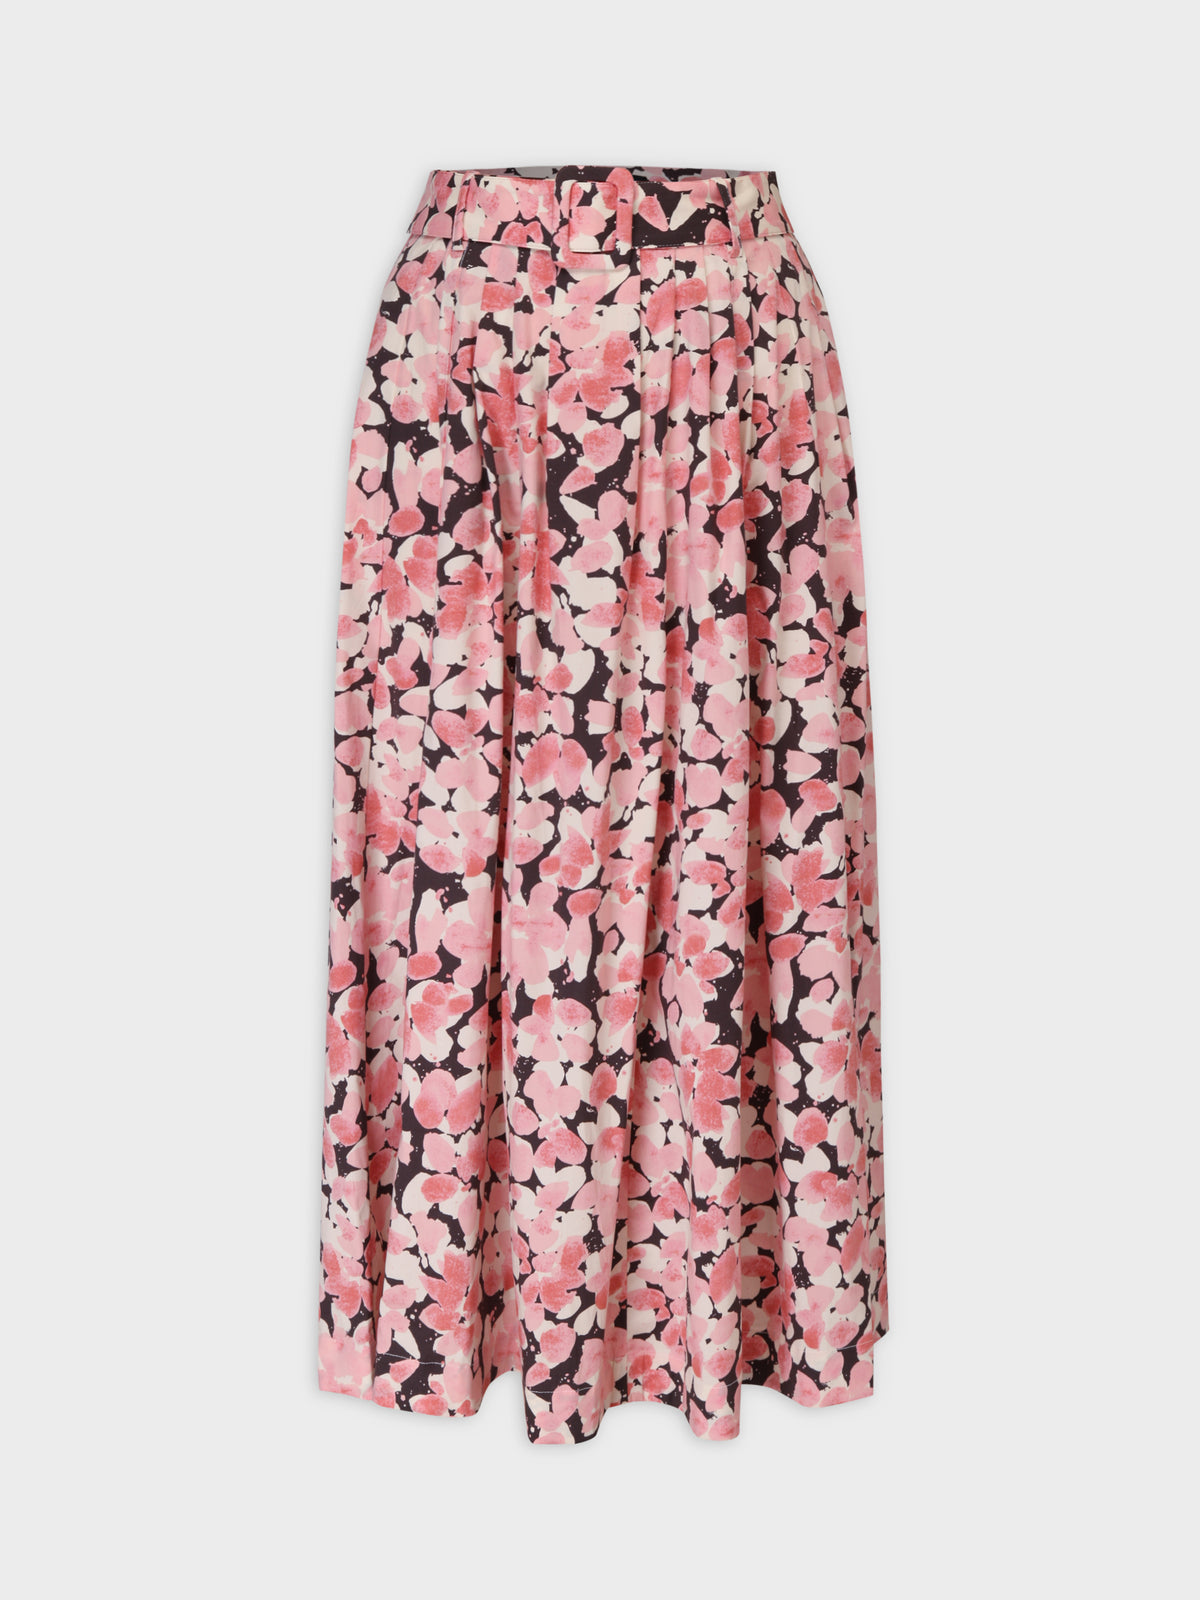 Belted Midi Skirt-Pink/Black Floral